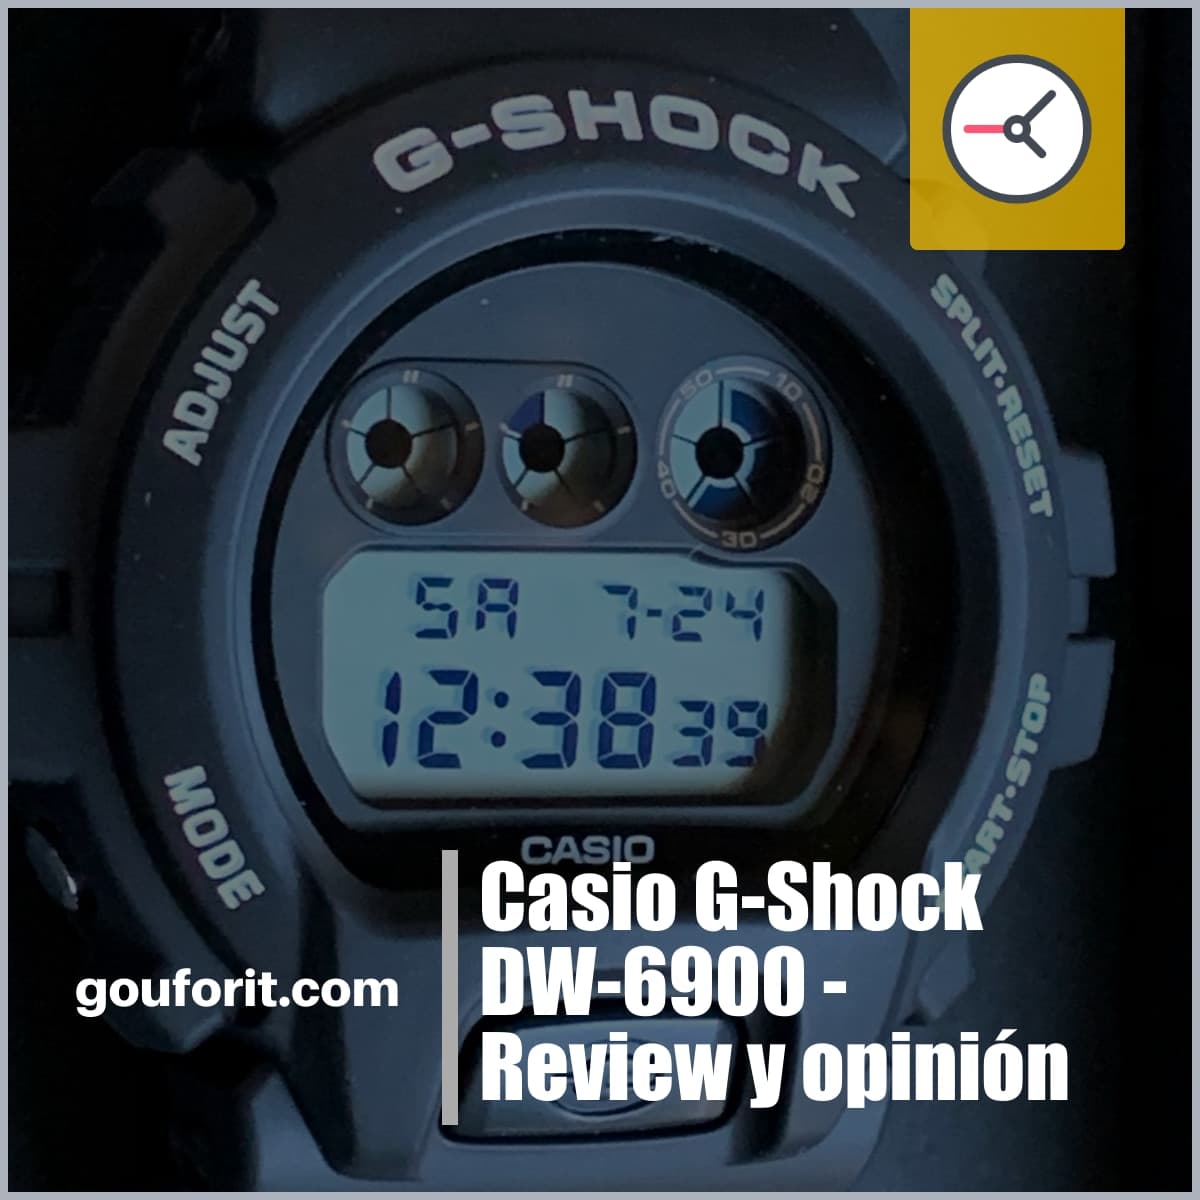 Casio G-Shock DW-6900 - Review y opinión